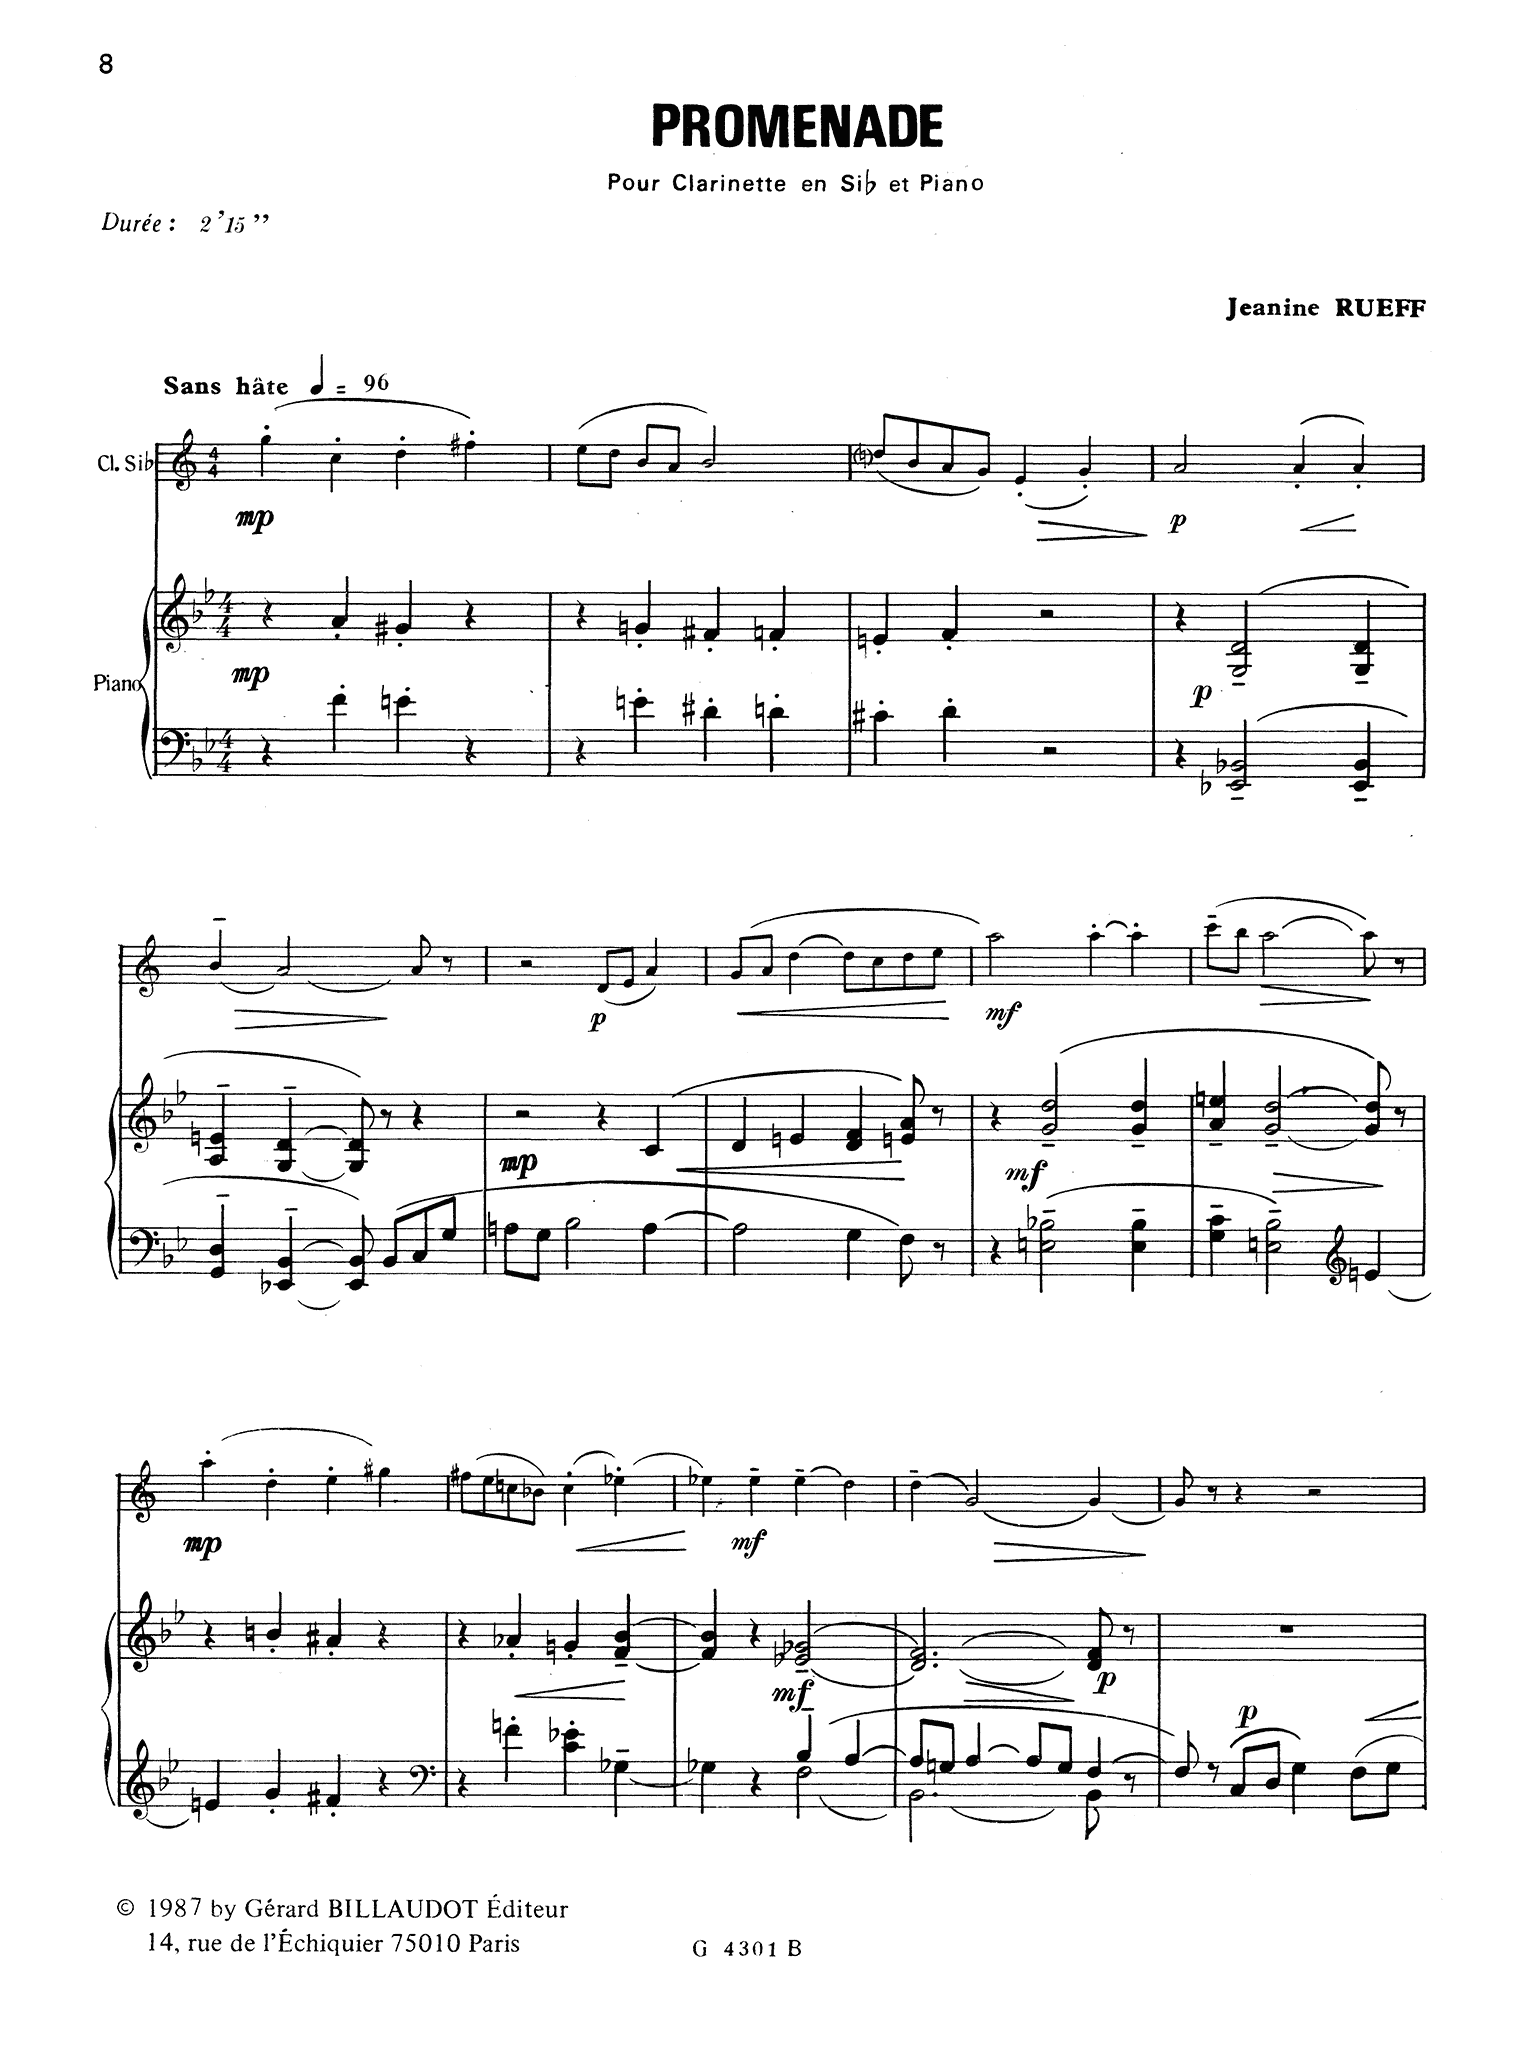 Rueff Promenade clarinet and piano score